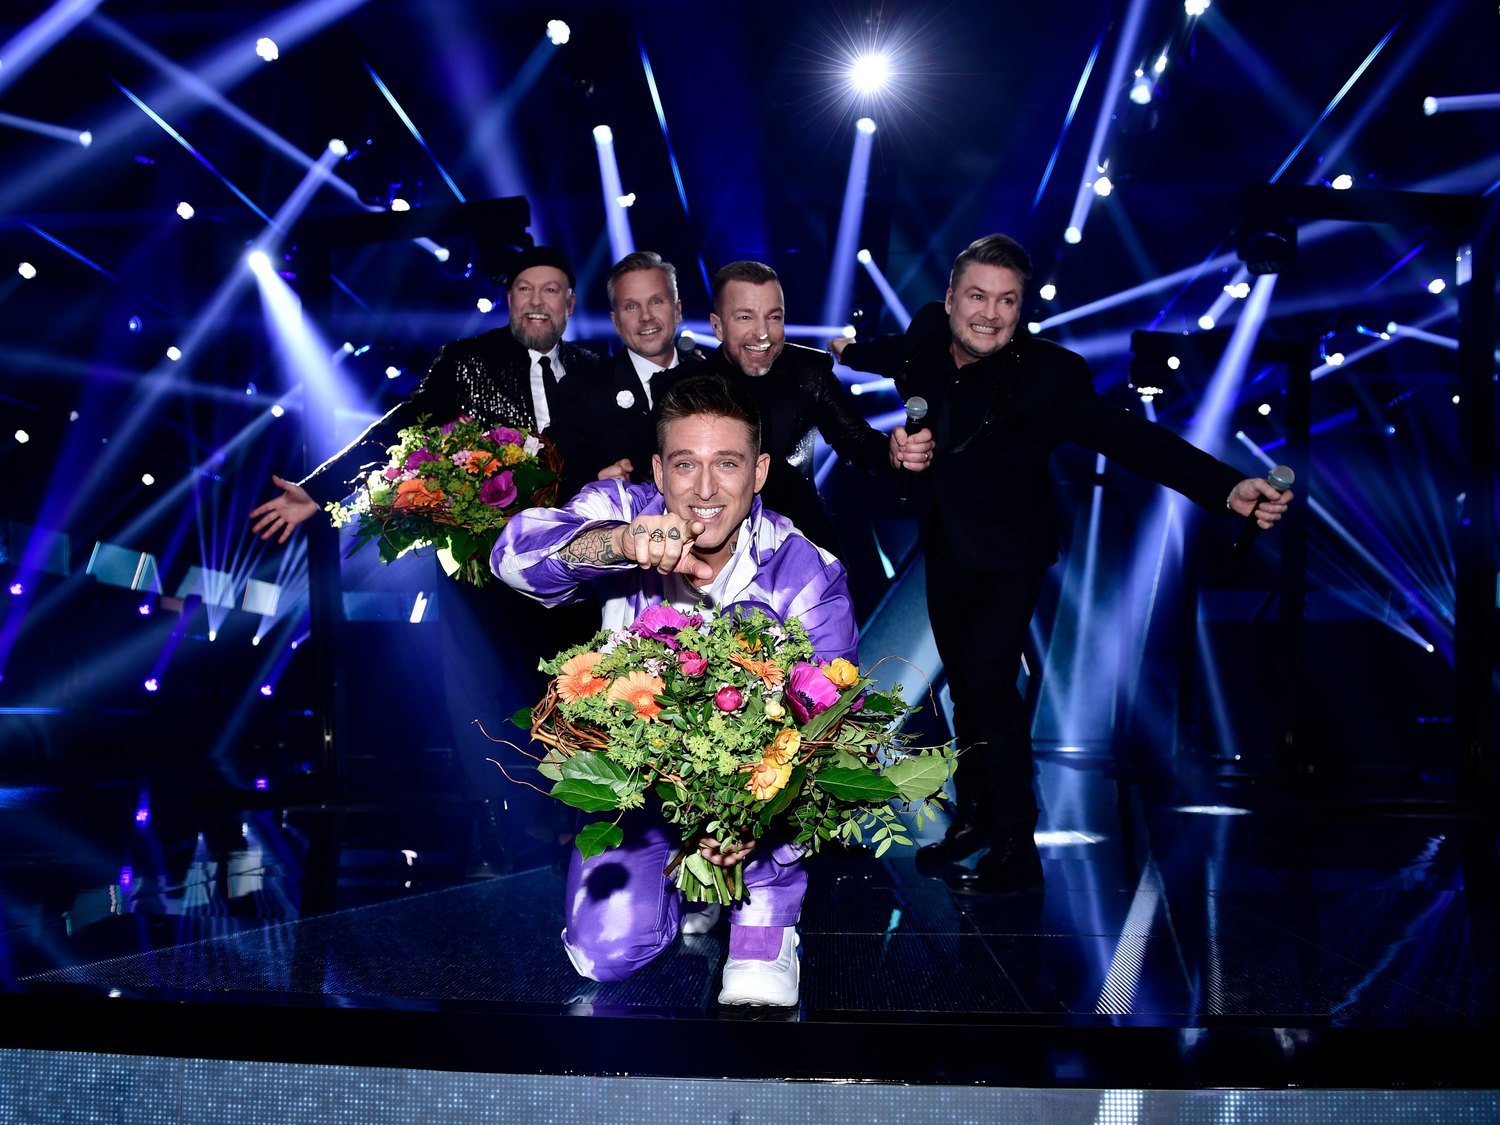 Melodifestivalen 2021: Así fue la primera semifinal con Danny Saucedo y Arvingarna clasificados